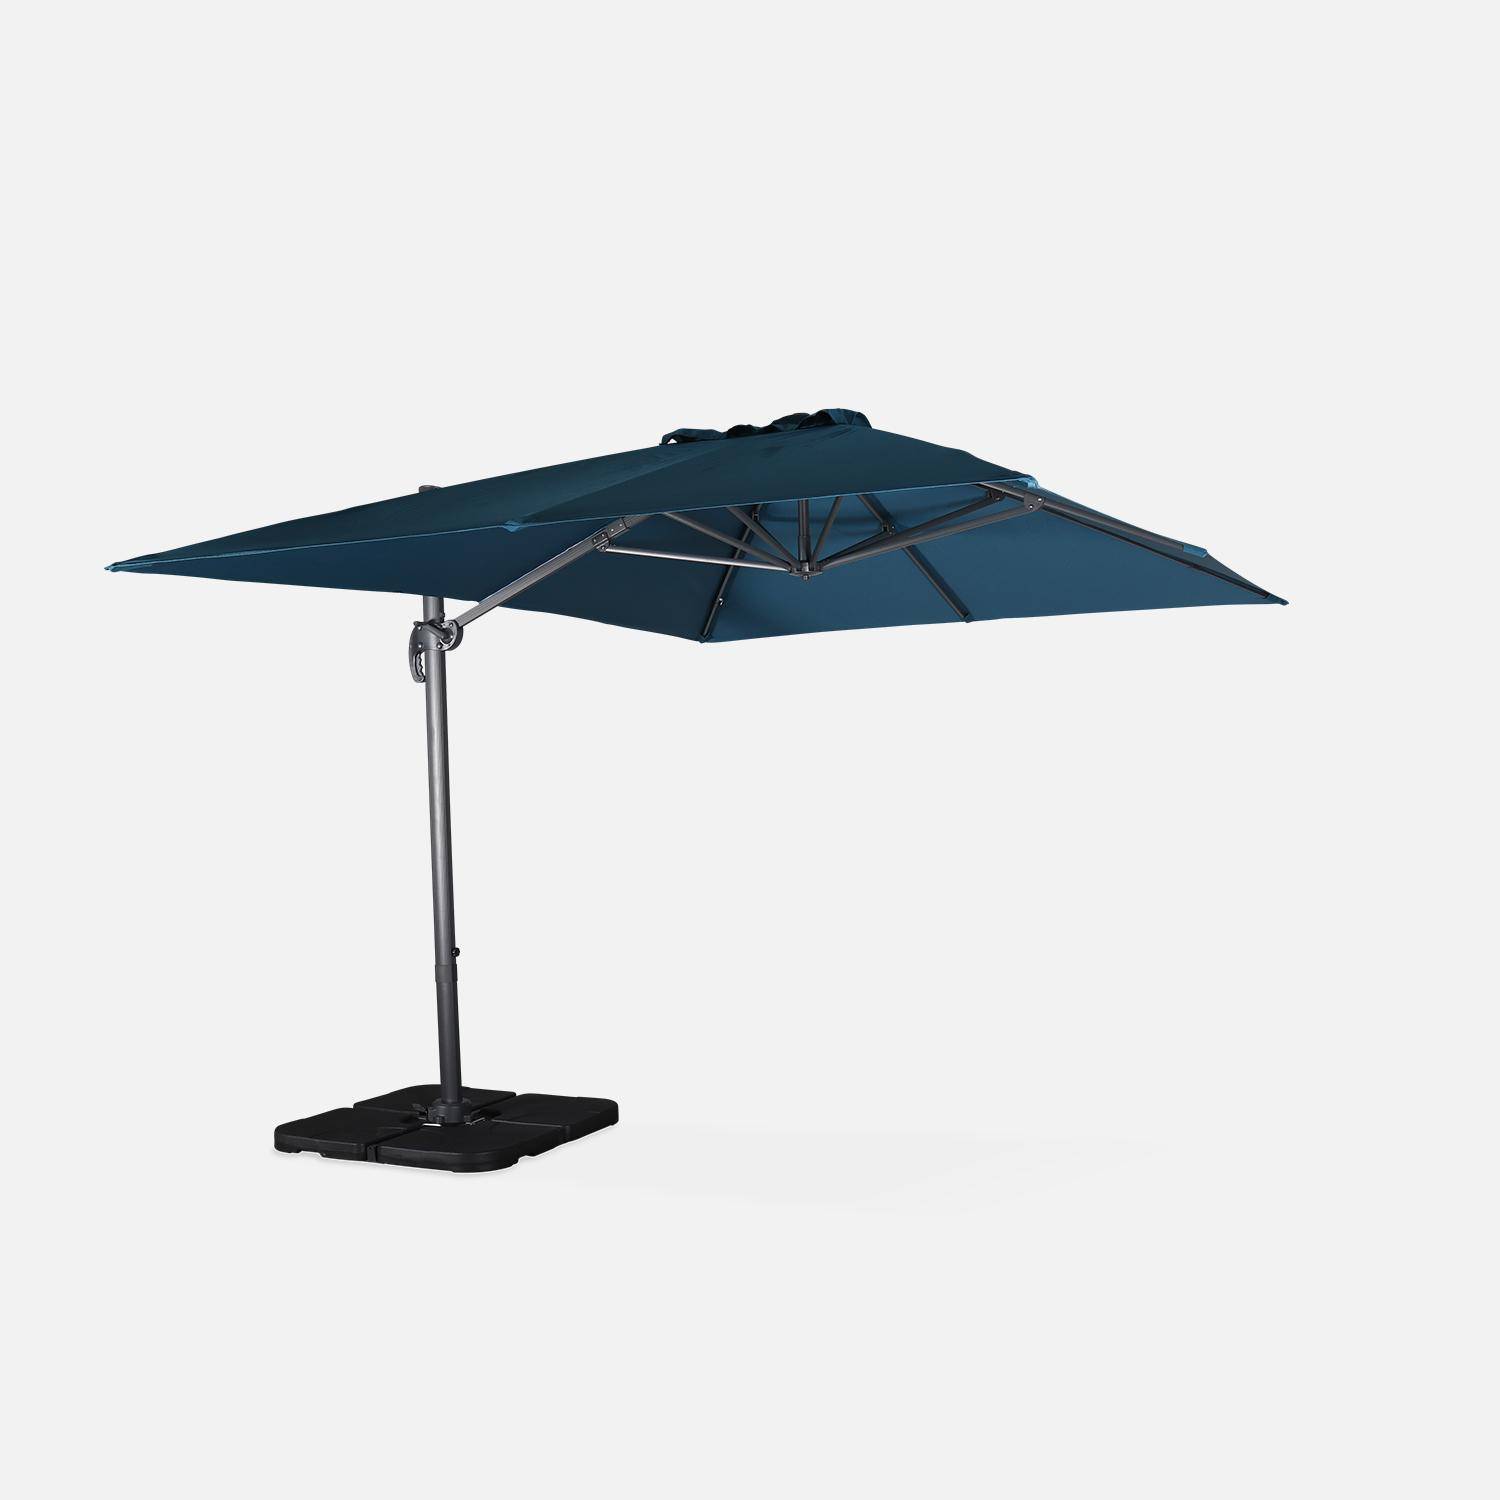 Eend blauwe rechthoekige parasol 3x4m + verzwaarde tegels 50x50cm,sweeek,Photo3